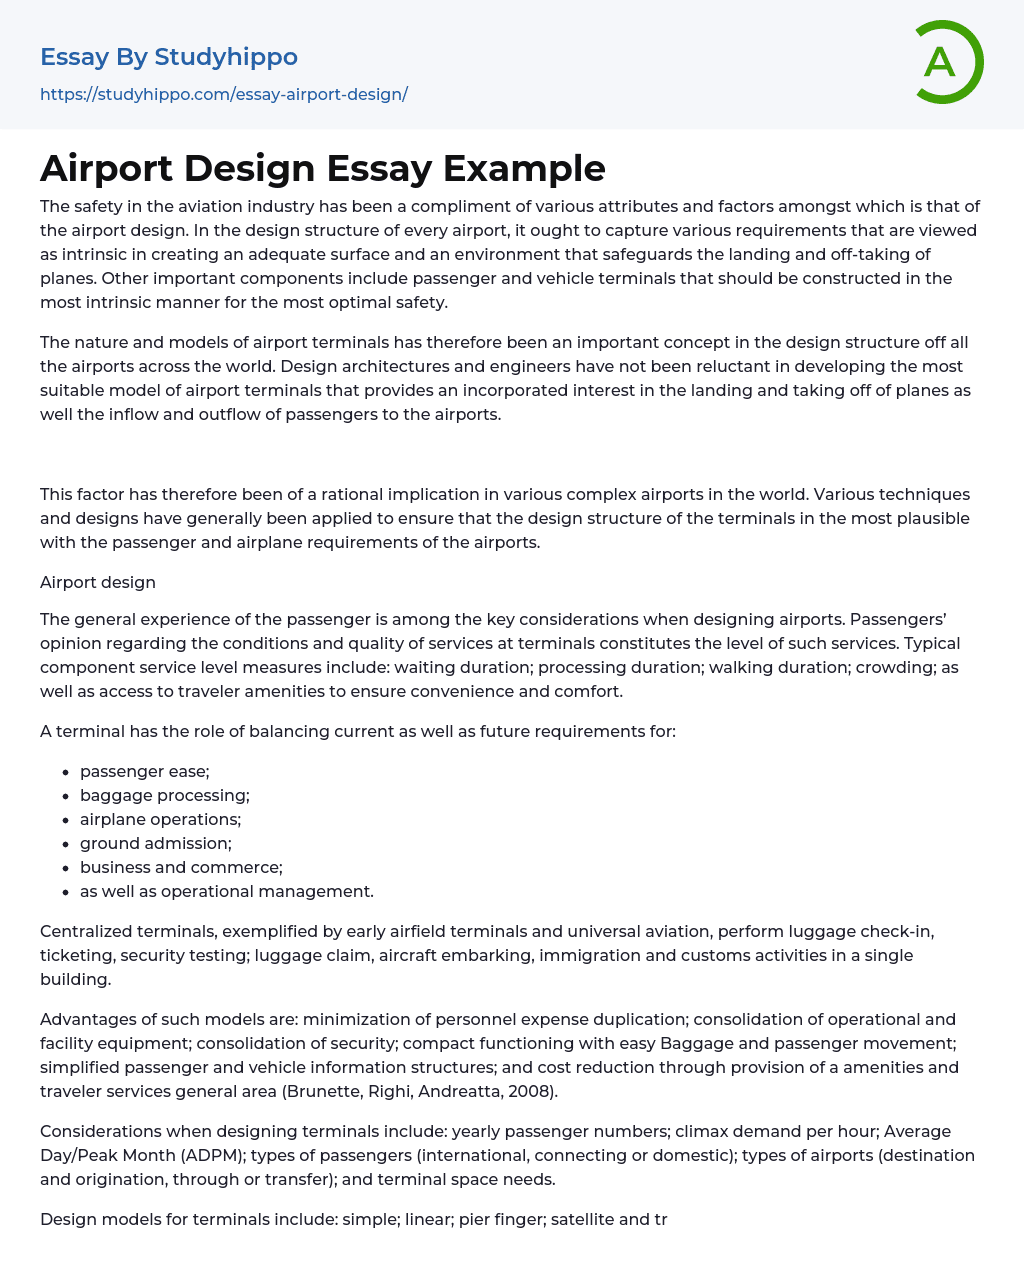 Airport Design Essay Example